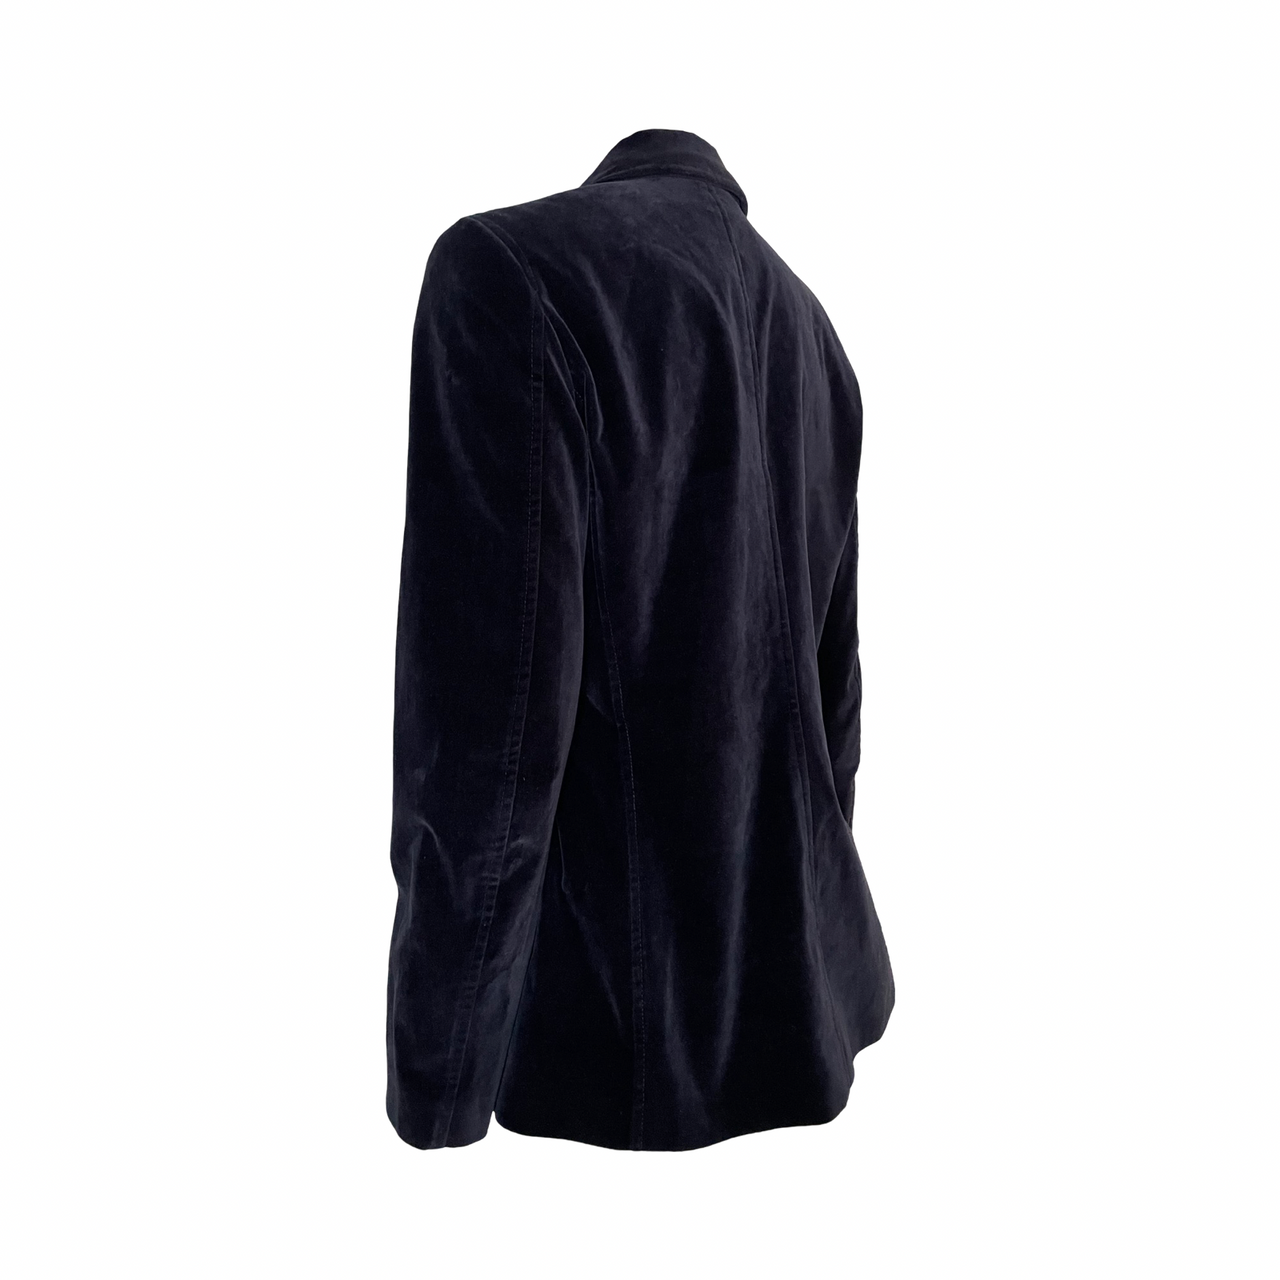 Gianfranco Ferre navy velvet zip jacket